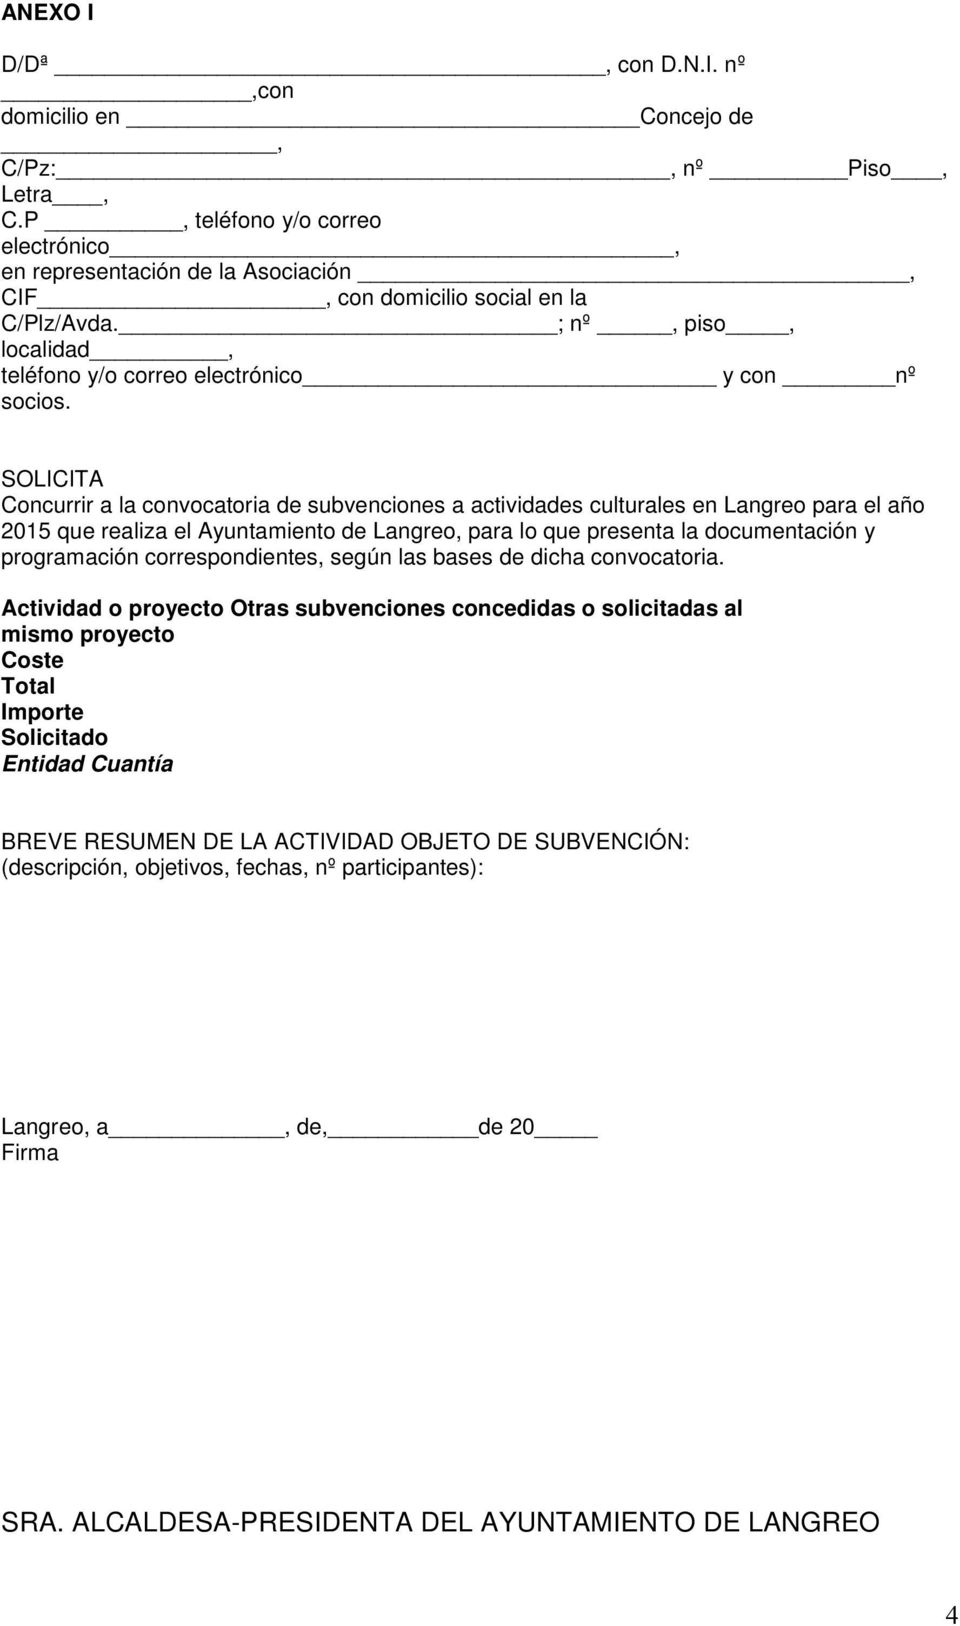 SOLICITA Concurrir a la convocatoria de subvenciones a actividades culturales en Langreo para el año 2015 que realiza el Ayuntamiento de Langreo, para lo que presenta la documentación y programación